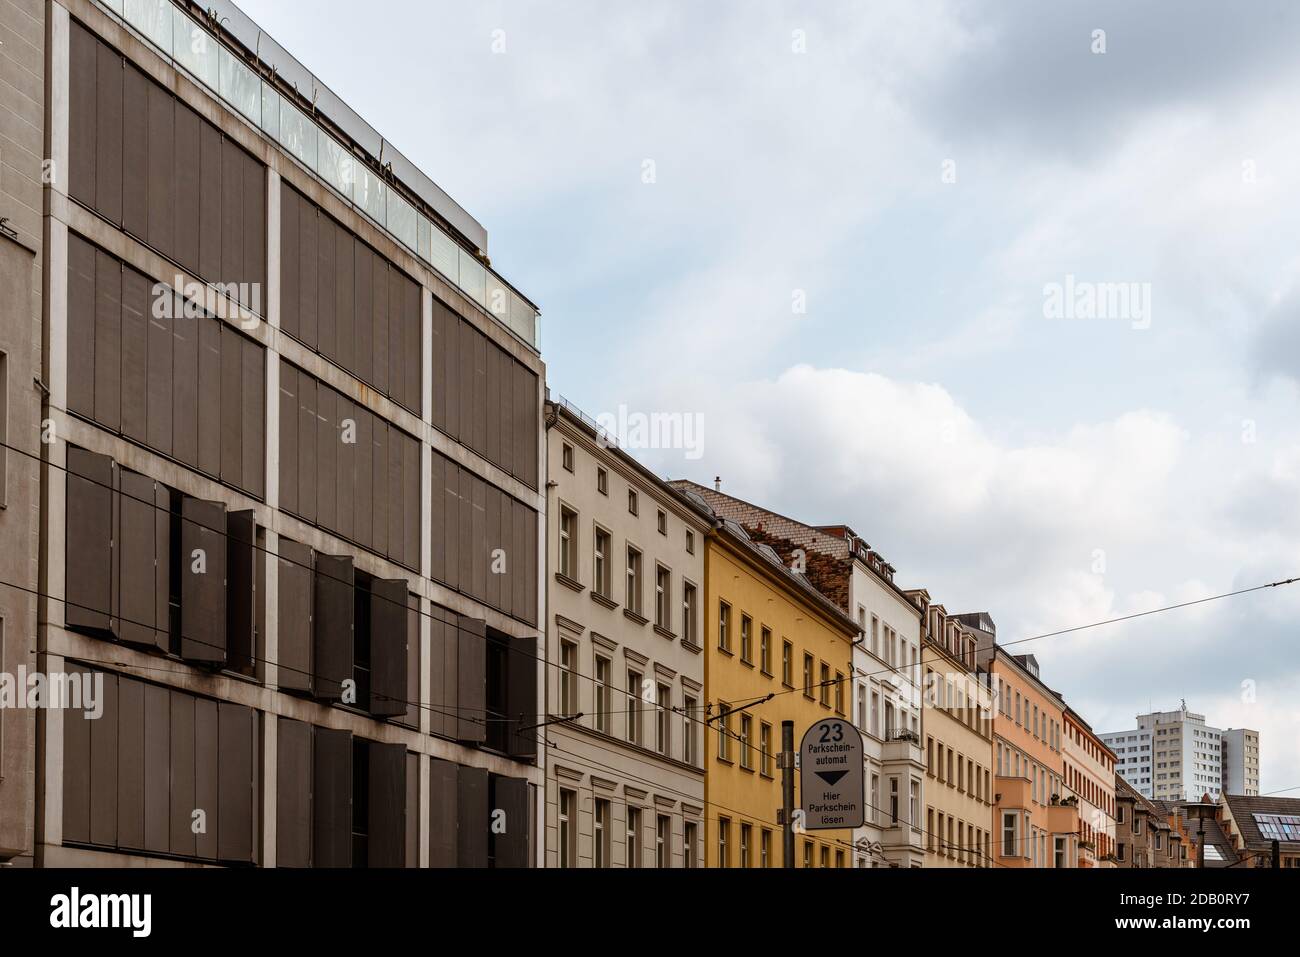 Apartmentgebäude im Zentrum von Berlin. Blick auf den Himmel mit Straßenbahnkabeln Stockfoto